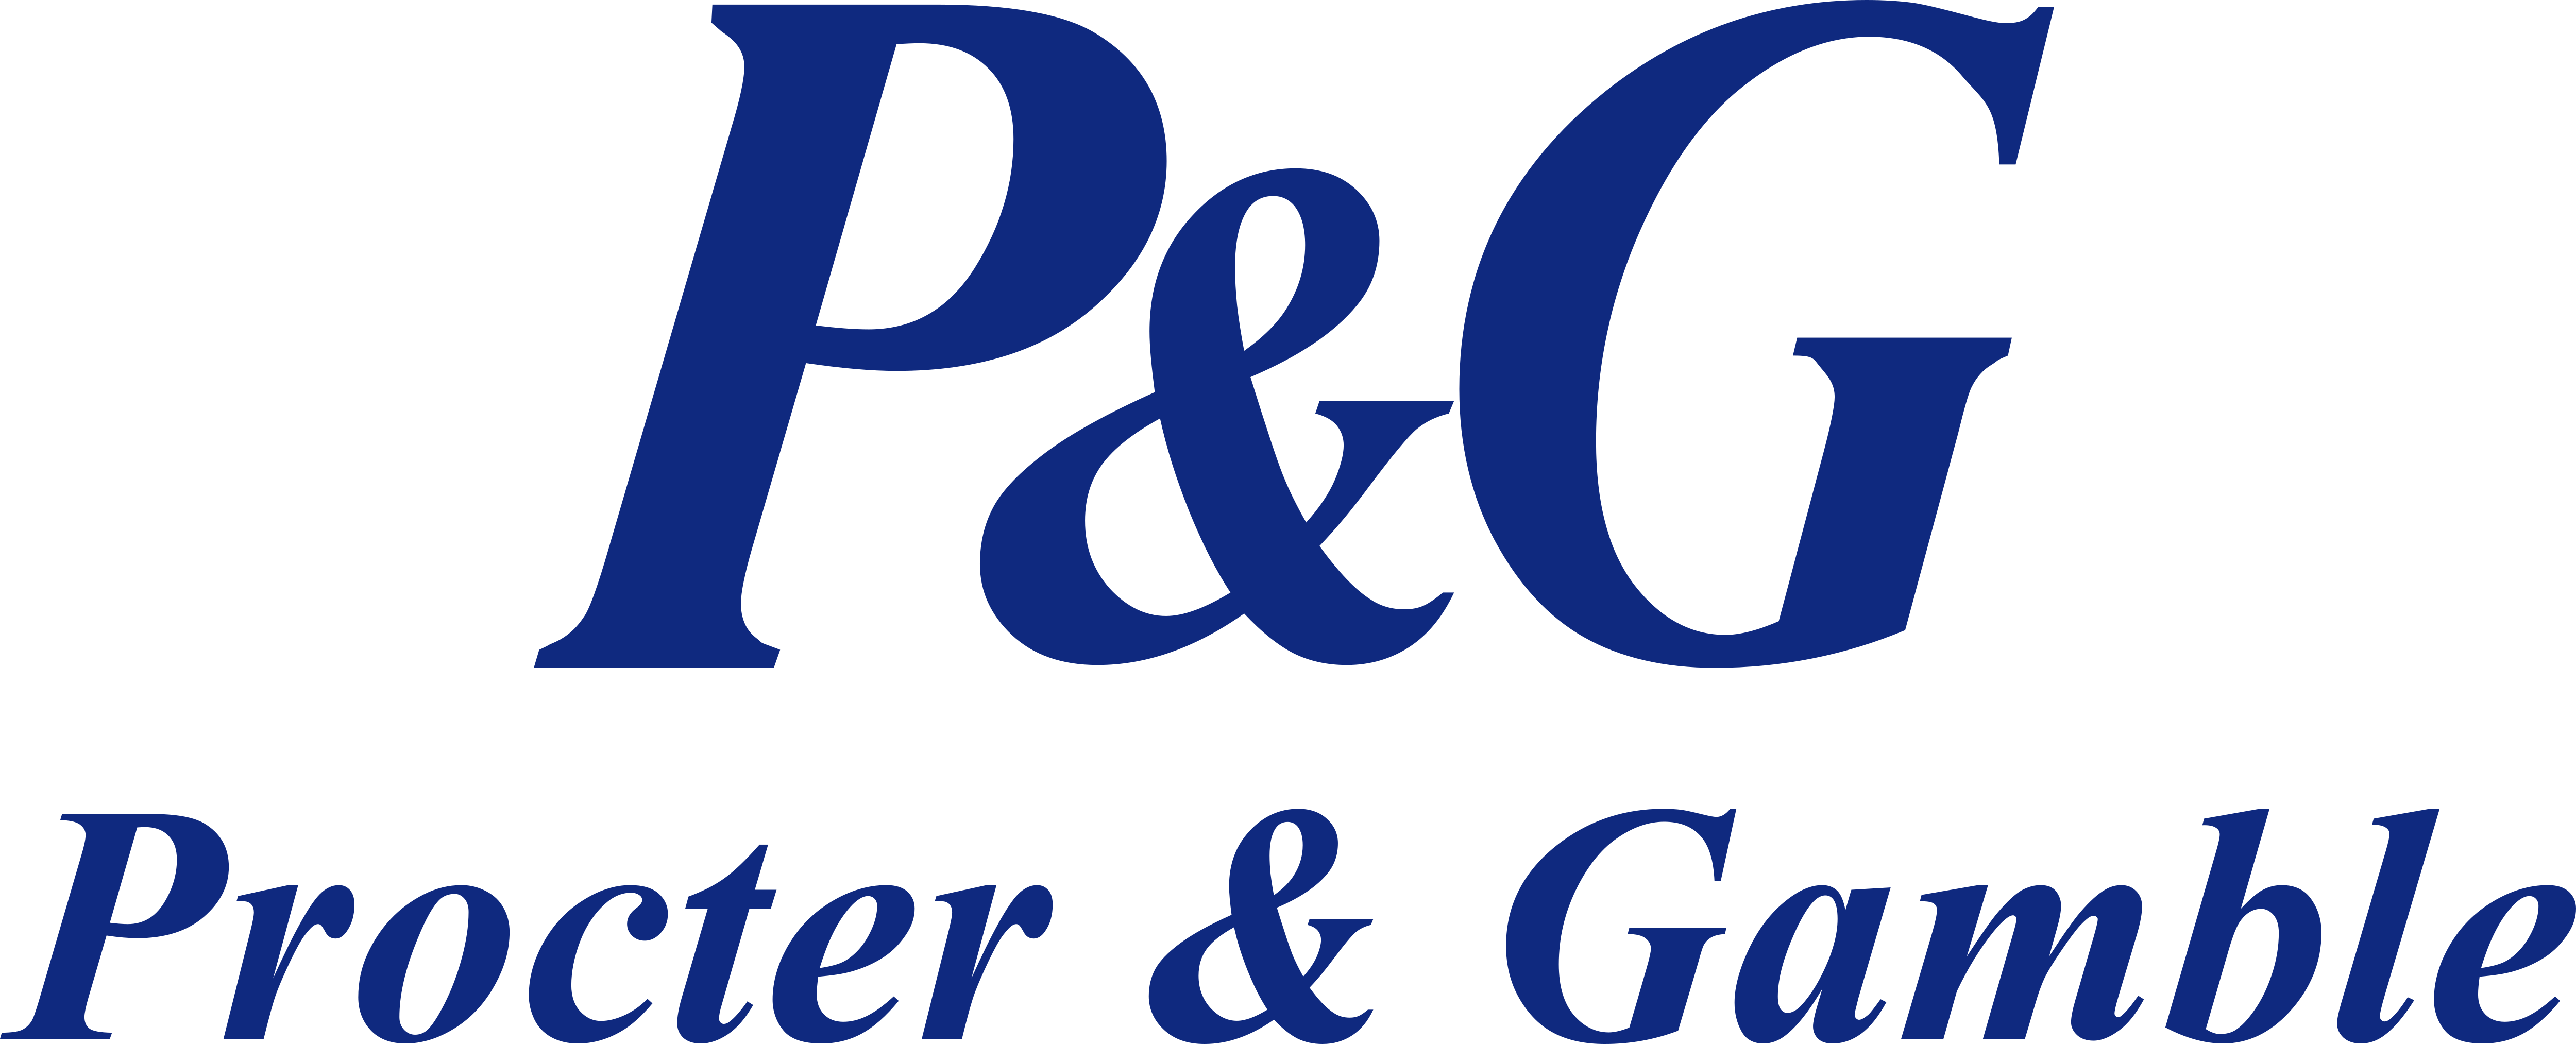 Procter & Gamble Wave Analysis 16 December, 2020